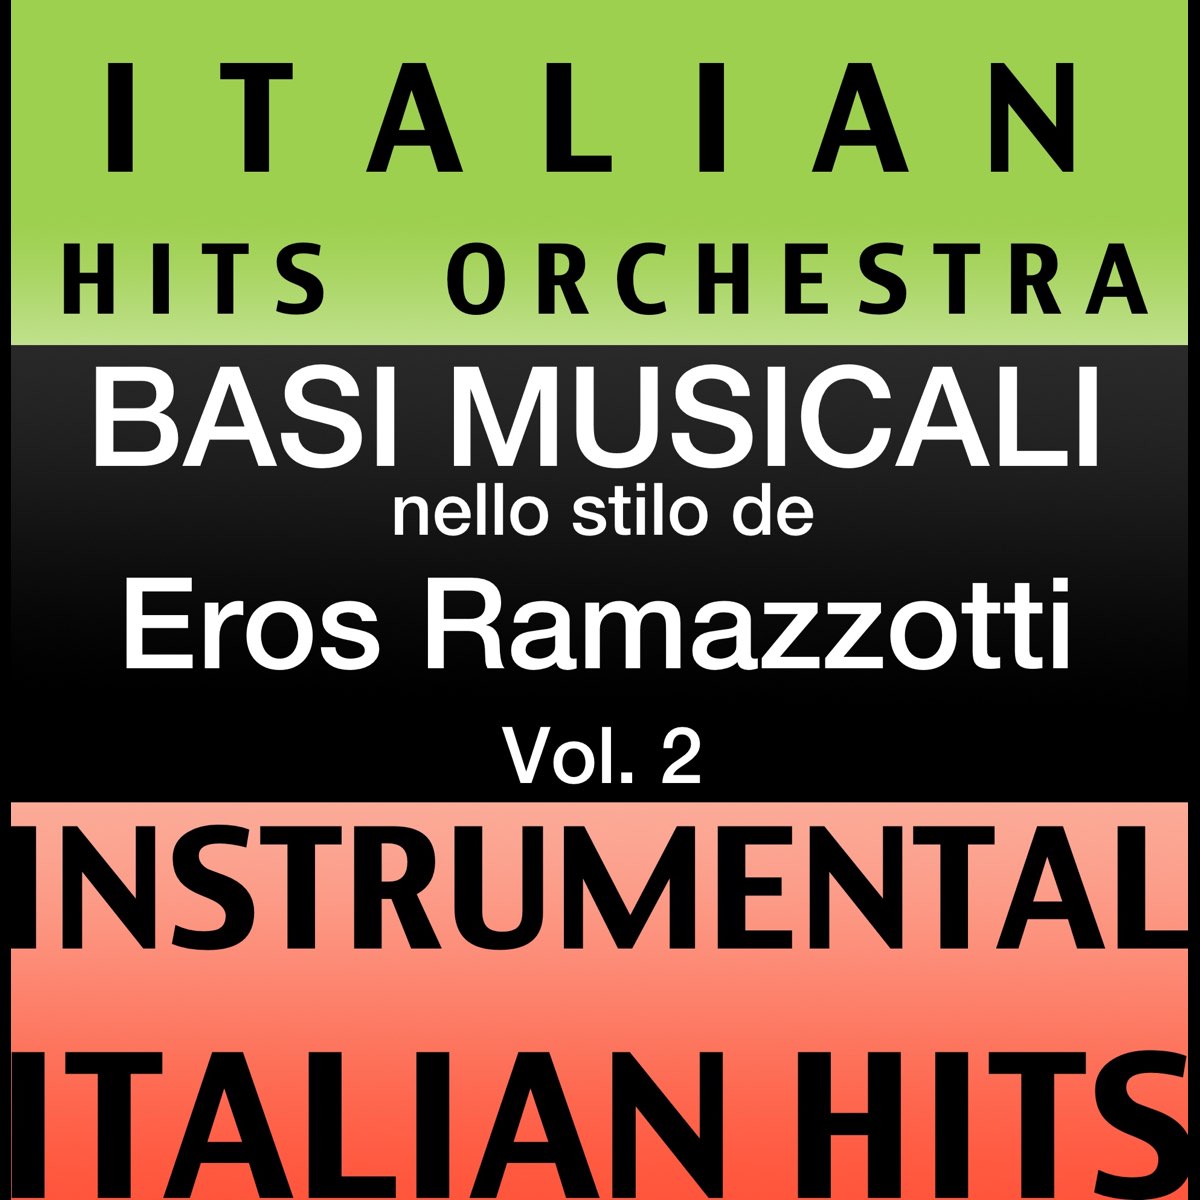 Basi musicale nello stilo dei Eros Ramazzotti (Instrumental Karaoke Tracks)  Vol.2 di Italian Hitmakers su Apple Music